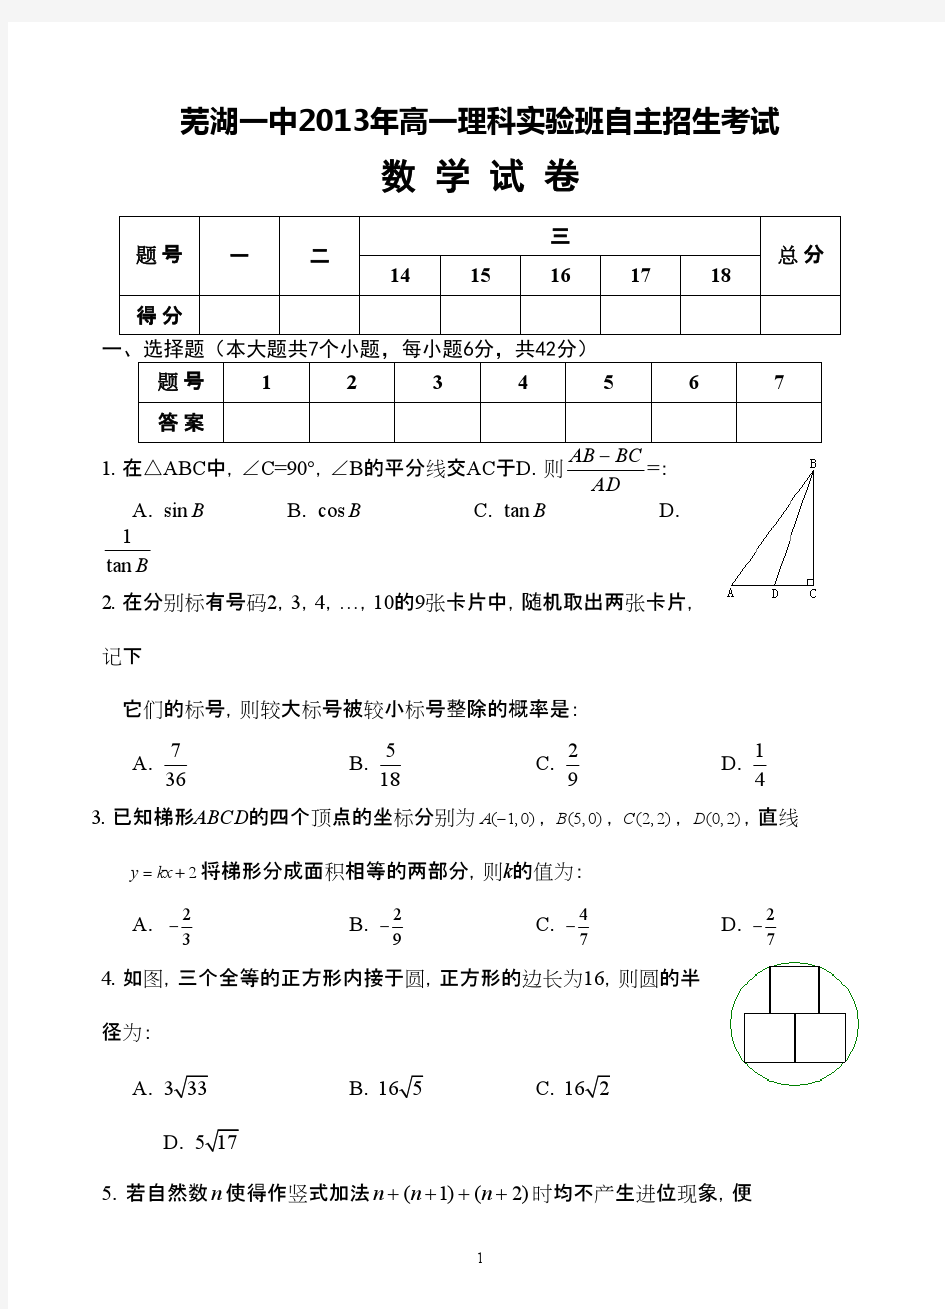 芜湖一中2013年高一理科实验班招生数学试题及答案